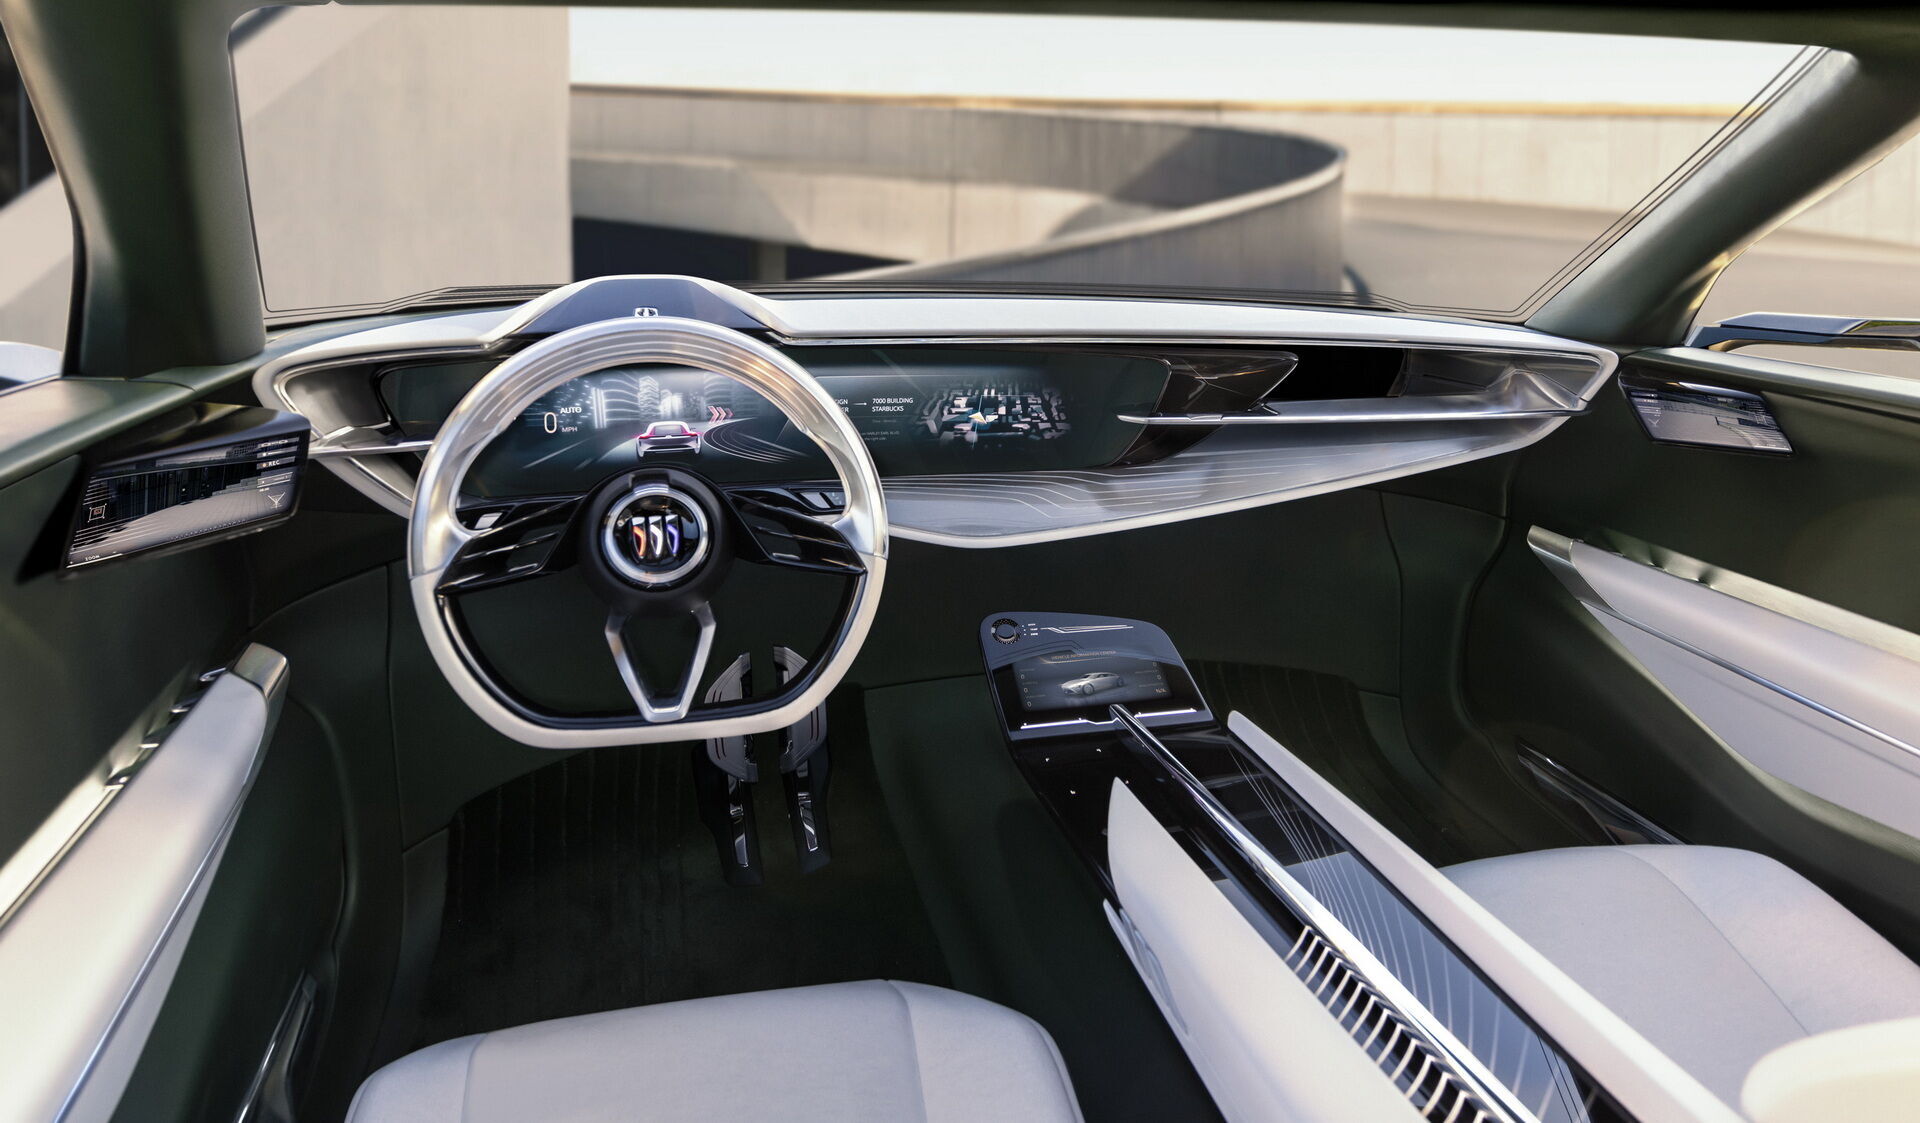 Попри на велику кількість цифрових екранів і сенсорів загальна стилістика салону виконана в дусі автомобілів 50-х років минулого століття